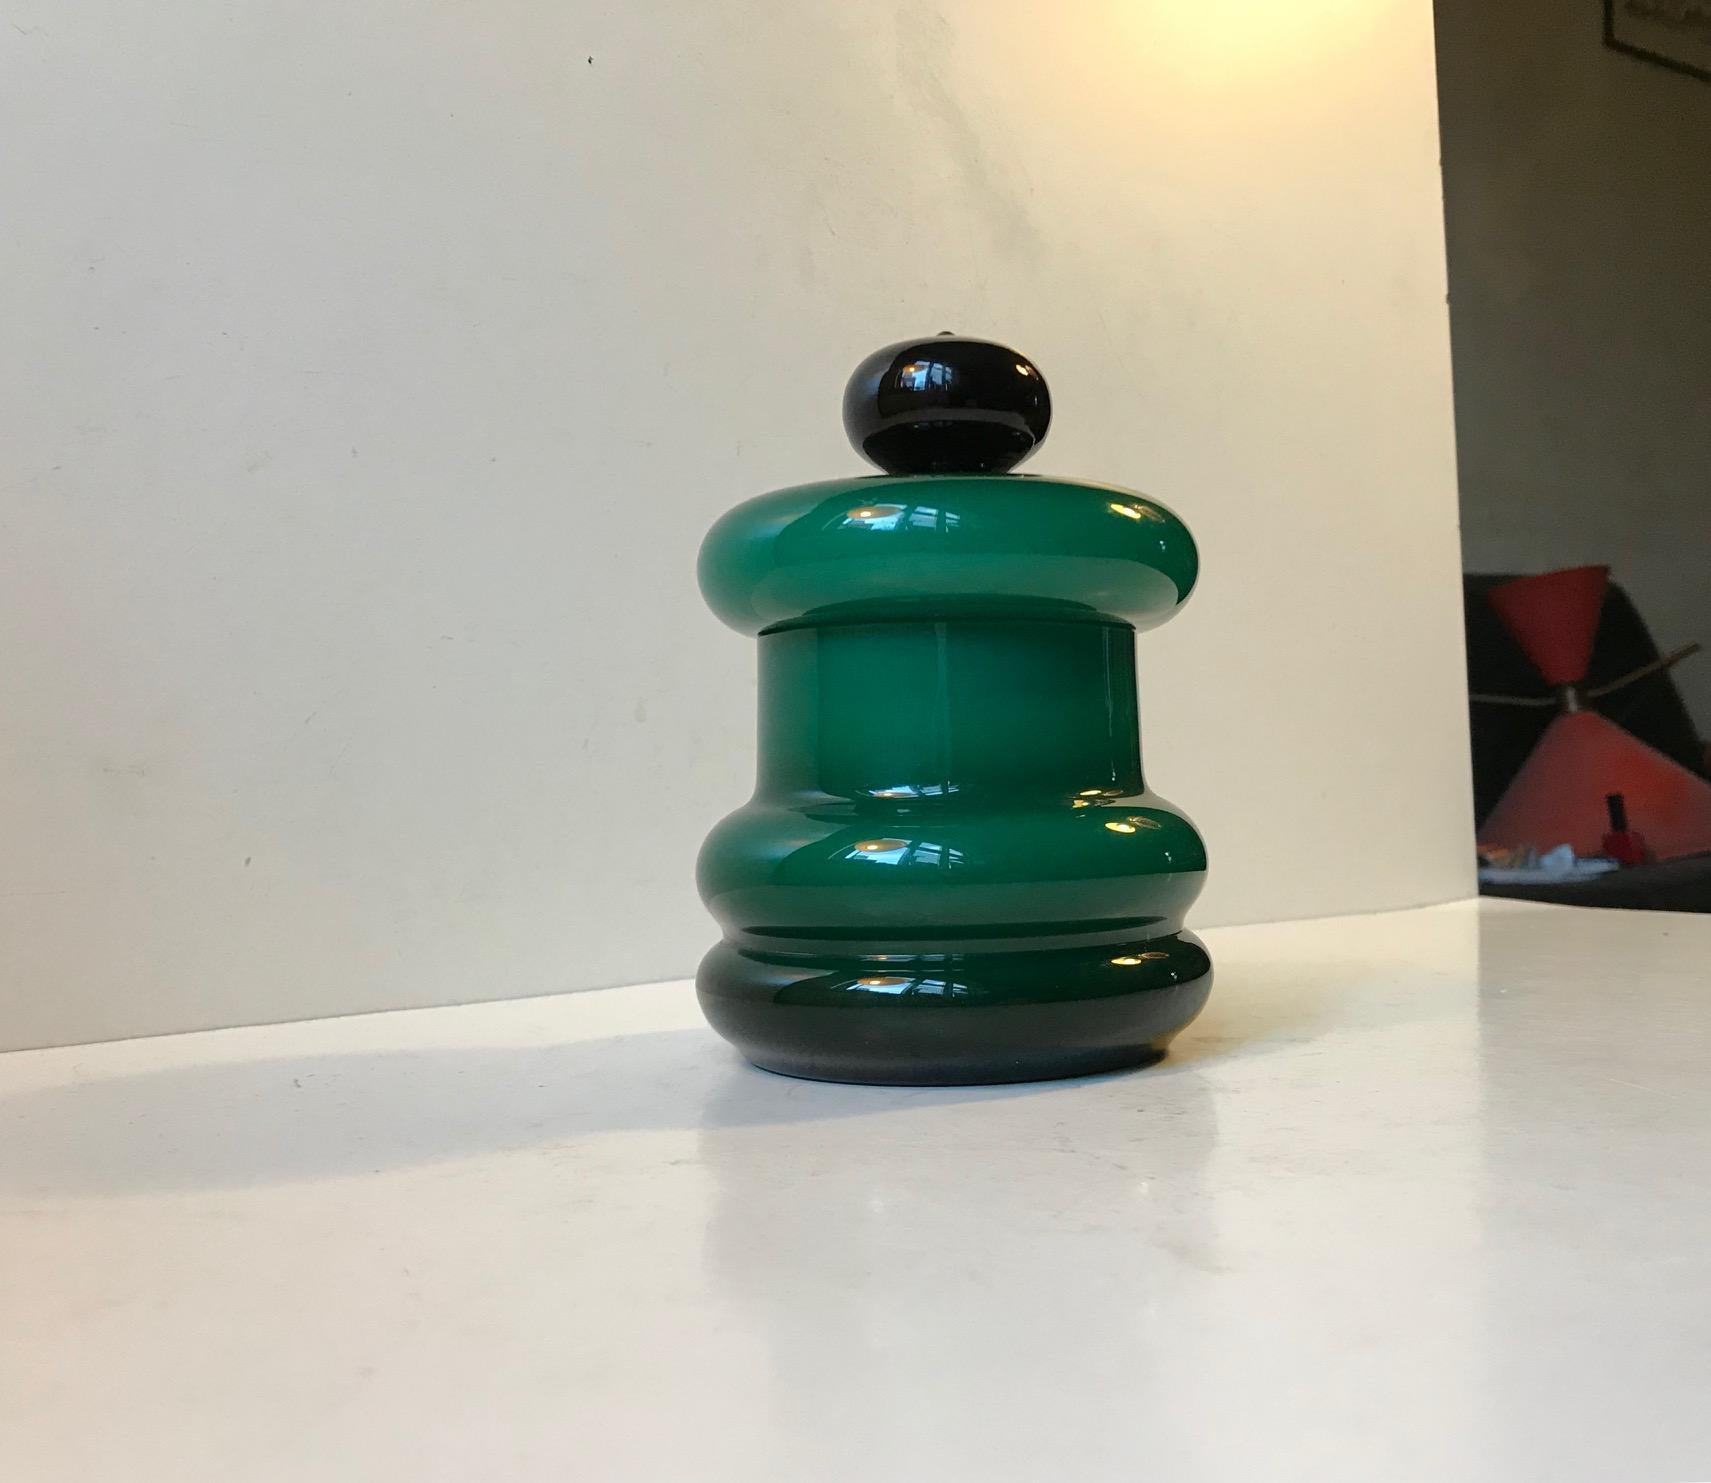 Dieses smaragdfarbene Gefäß mit Deckel wurde in den späten 1950er oder frühen 1960er Jahren in Empoli in Italien hergestellt und entworfen. Es besteht aus einem ummantelten Außenglas, dessen Farbton je nach den Kurven seiner Form variiert. Der